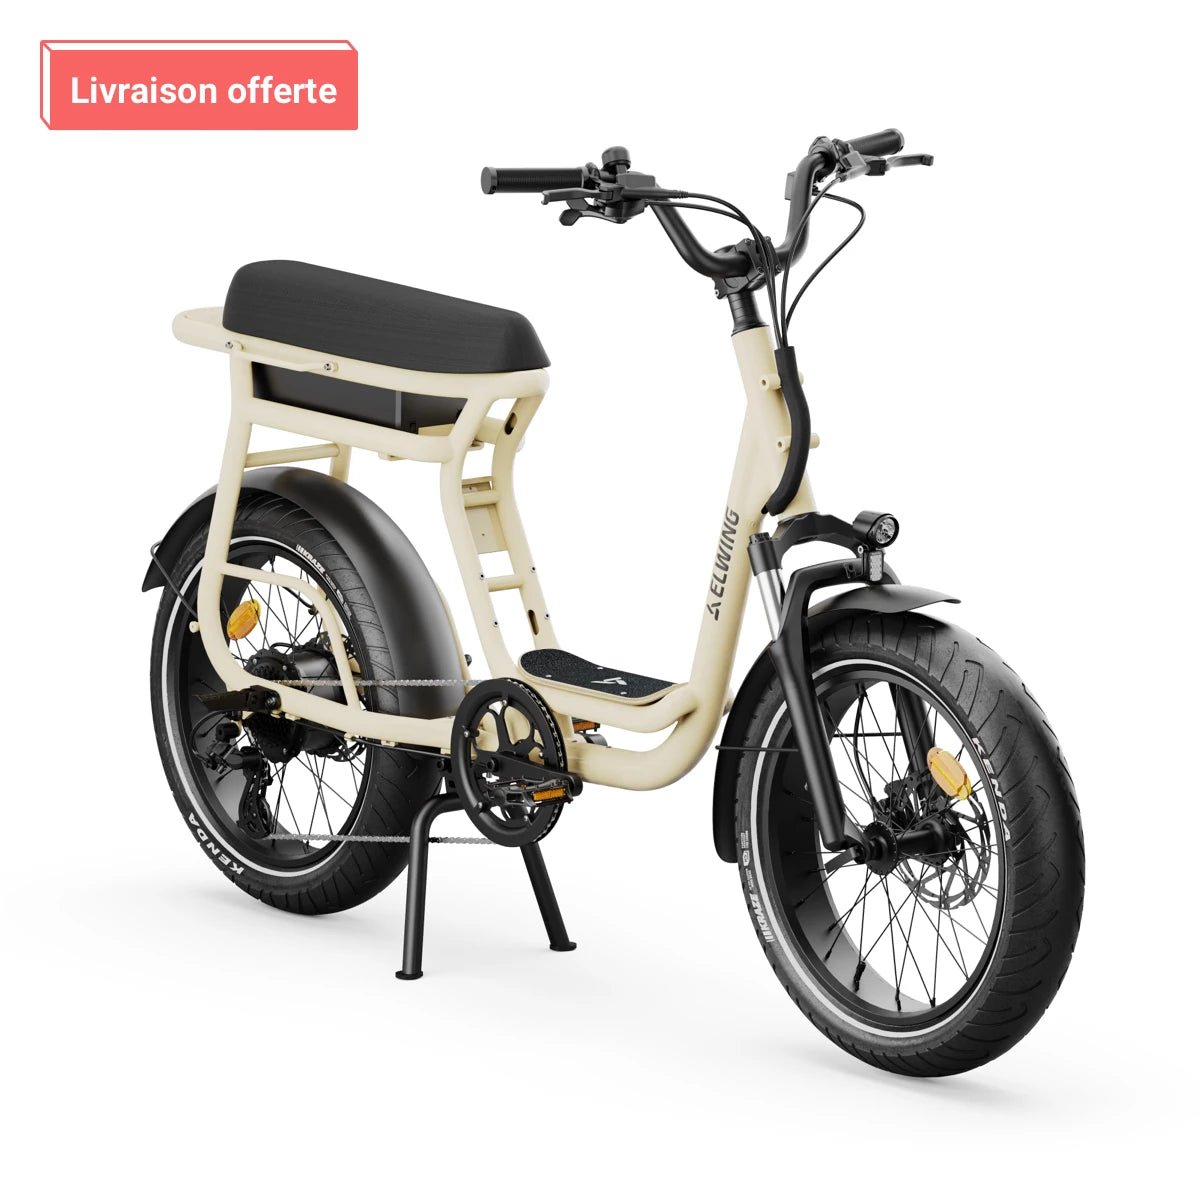 Le meilleur vélo électrique biplace, cargo et compact Elwing Yuvy 2